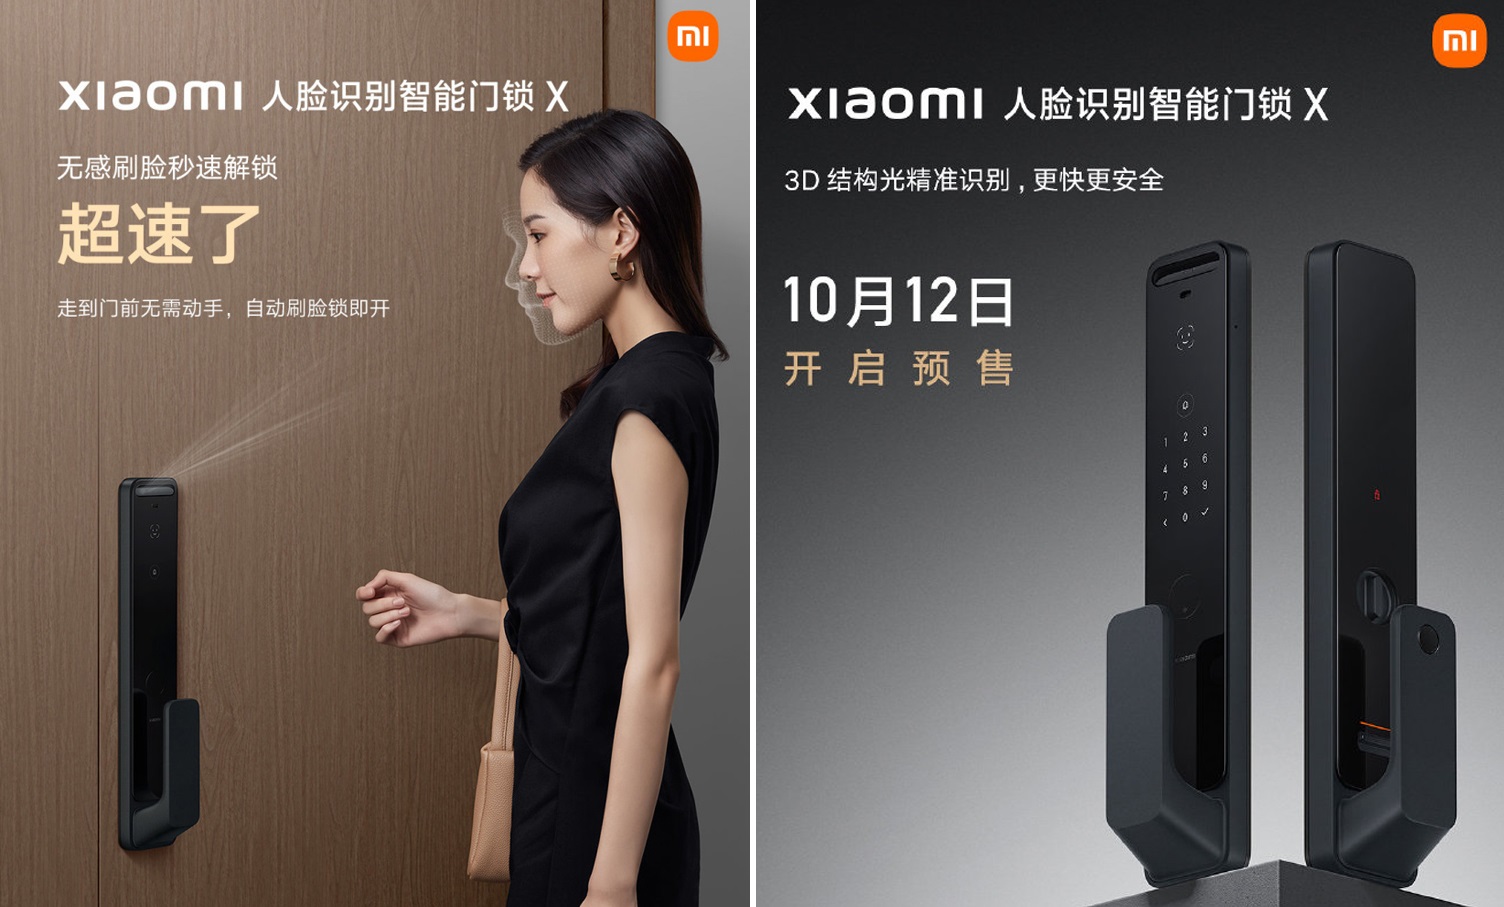 Xiaomi prezentuje zamek do drzwi z NFC, ekranem AMOLED i rozpoznawaniem twarzy 3D